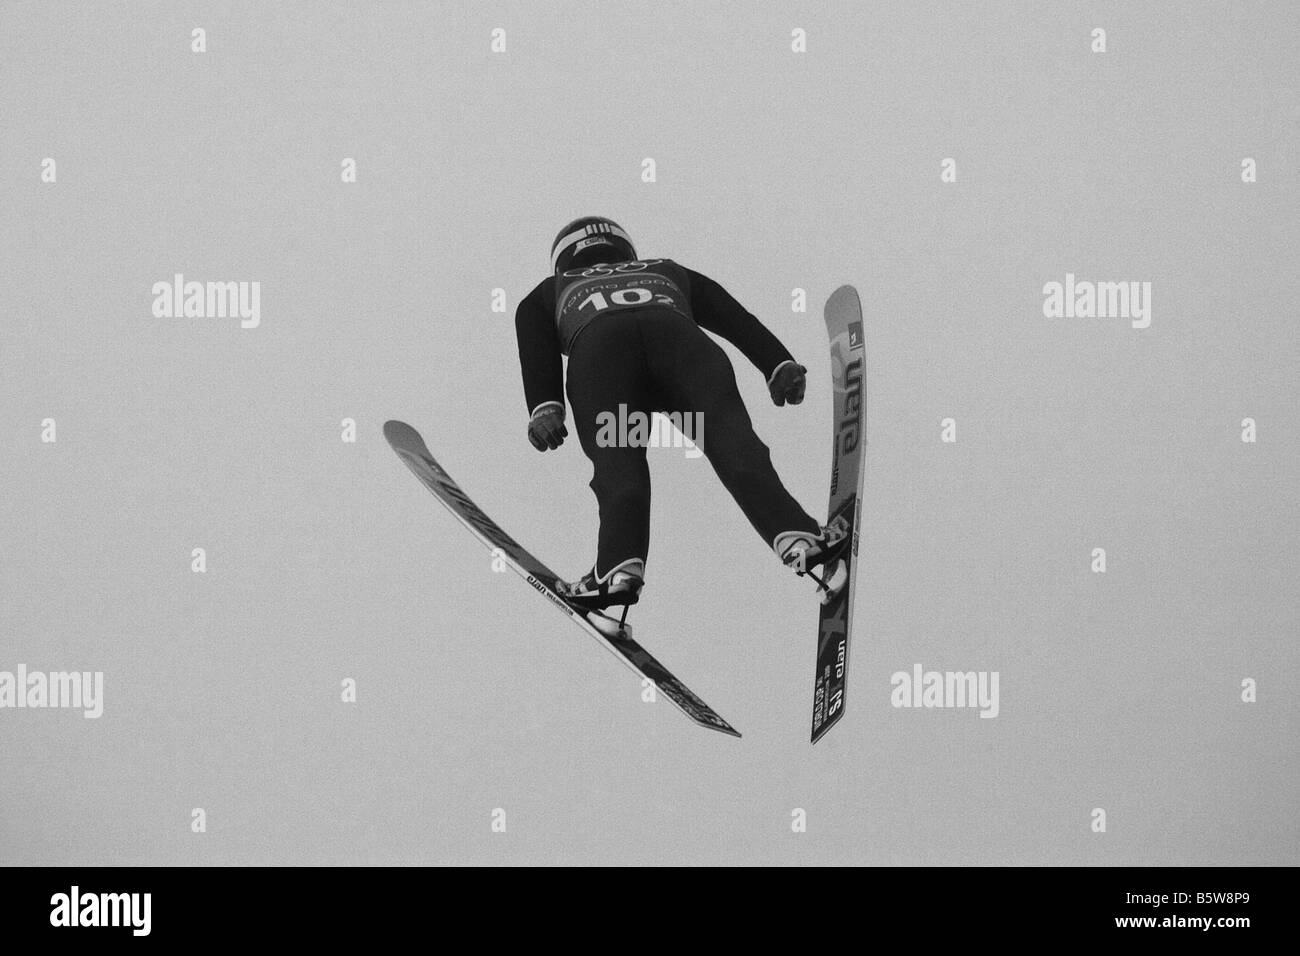 Ski Jumper in action Stock Photo